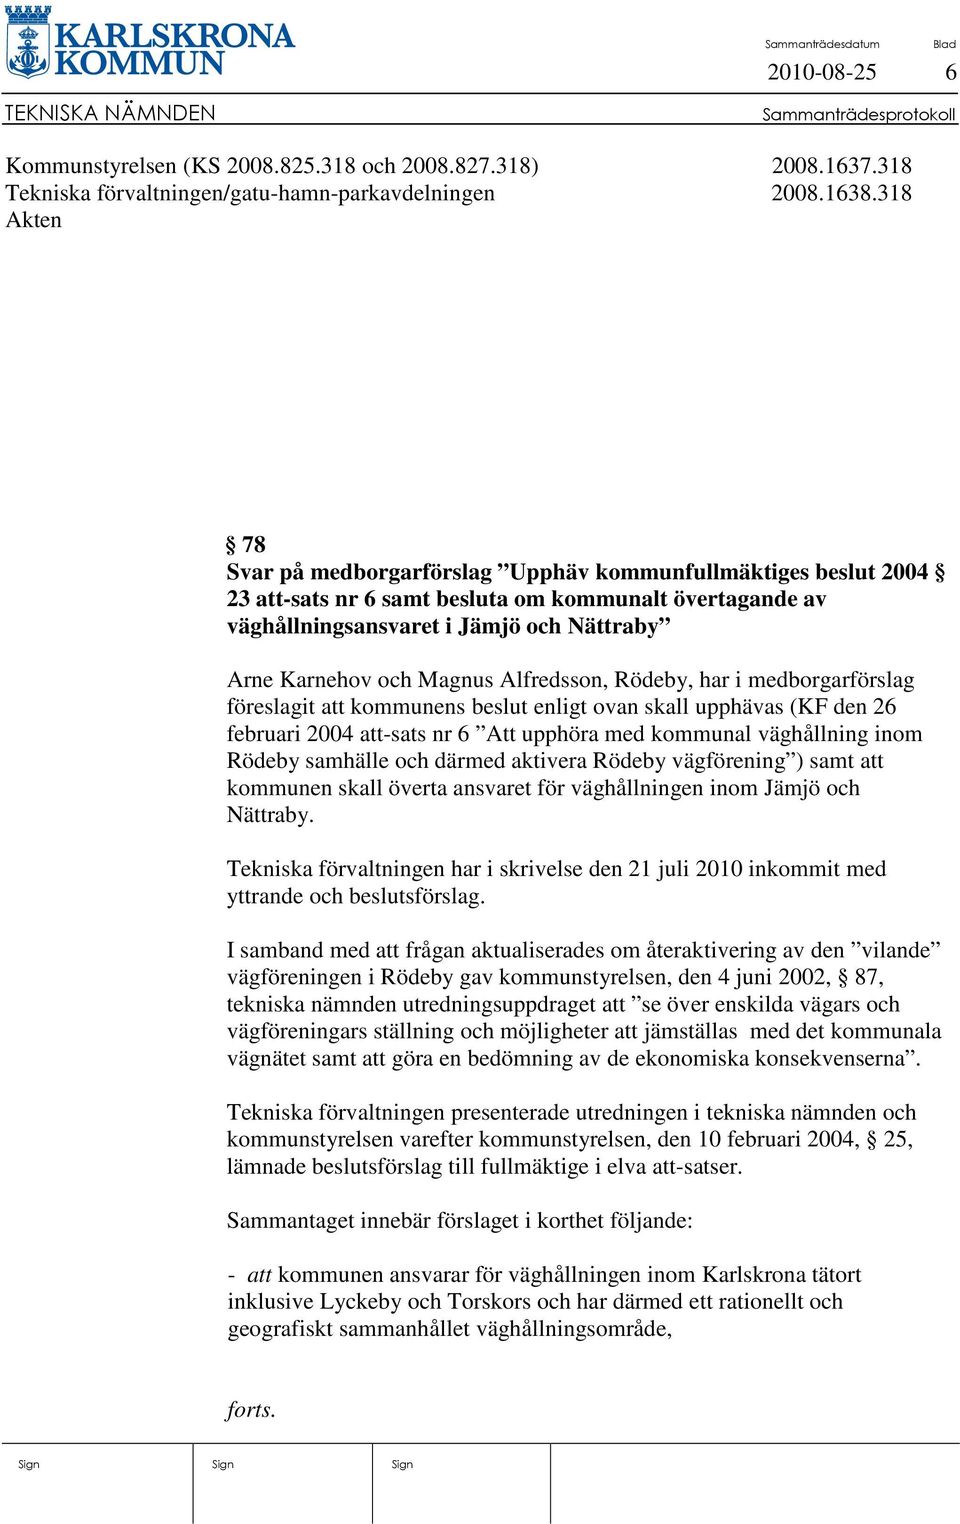 Magnus Alfredsson, Rödeby, har i medborgarförslag föreslagit att kommunens beslut enligt ovan skall upphävas (KF den 26 februari 2004 att-sats nr 6 Att upphöra med kommunal väghållning inom Rödeby